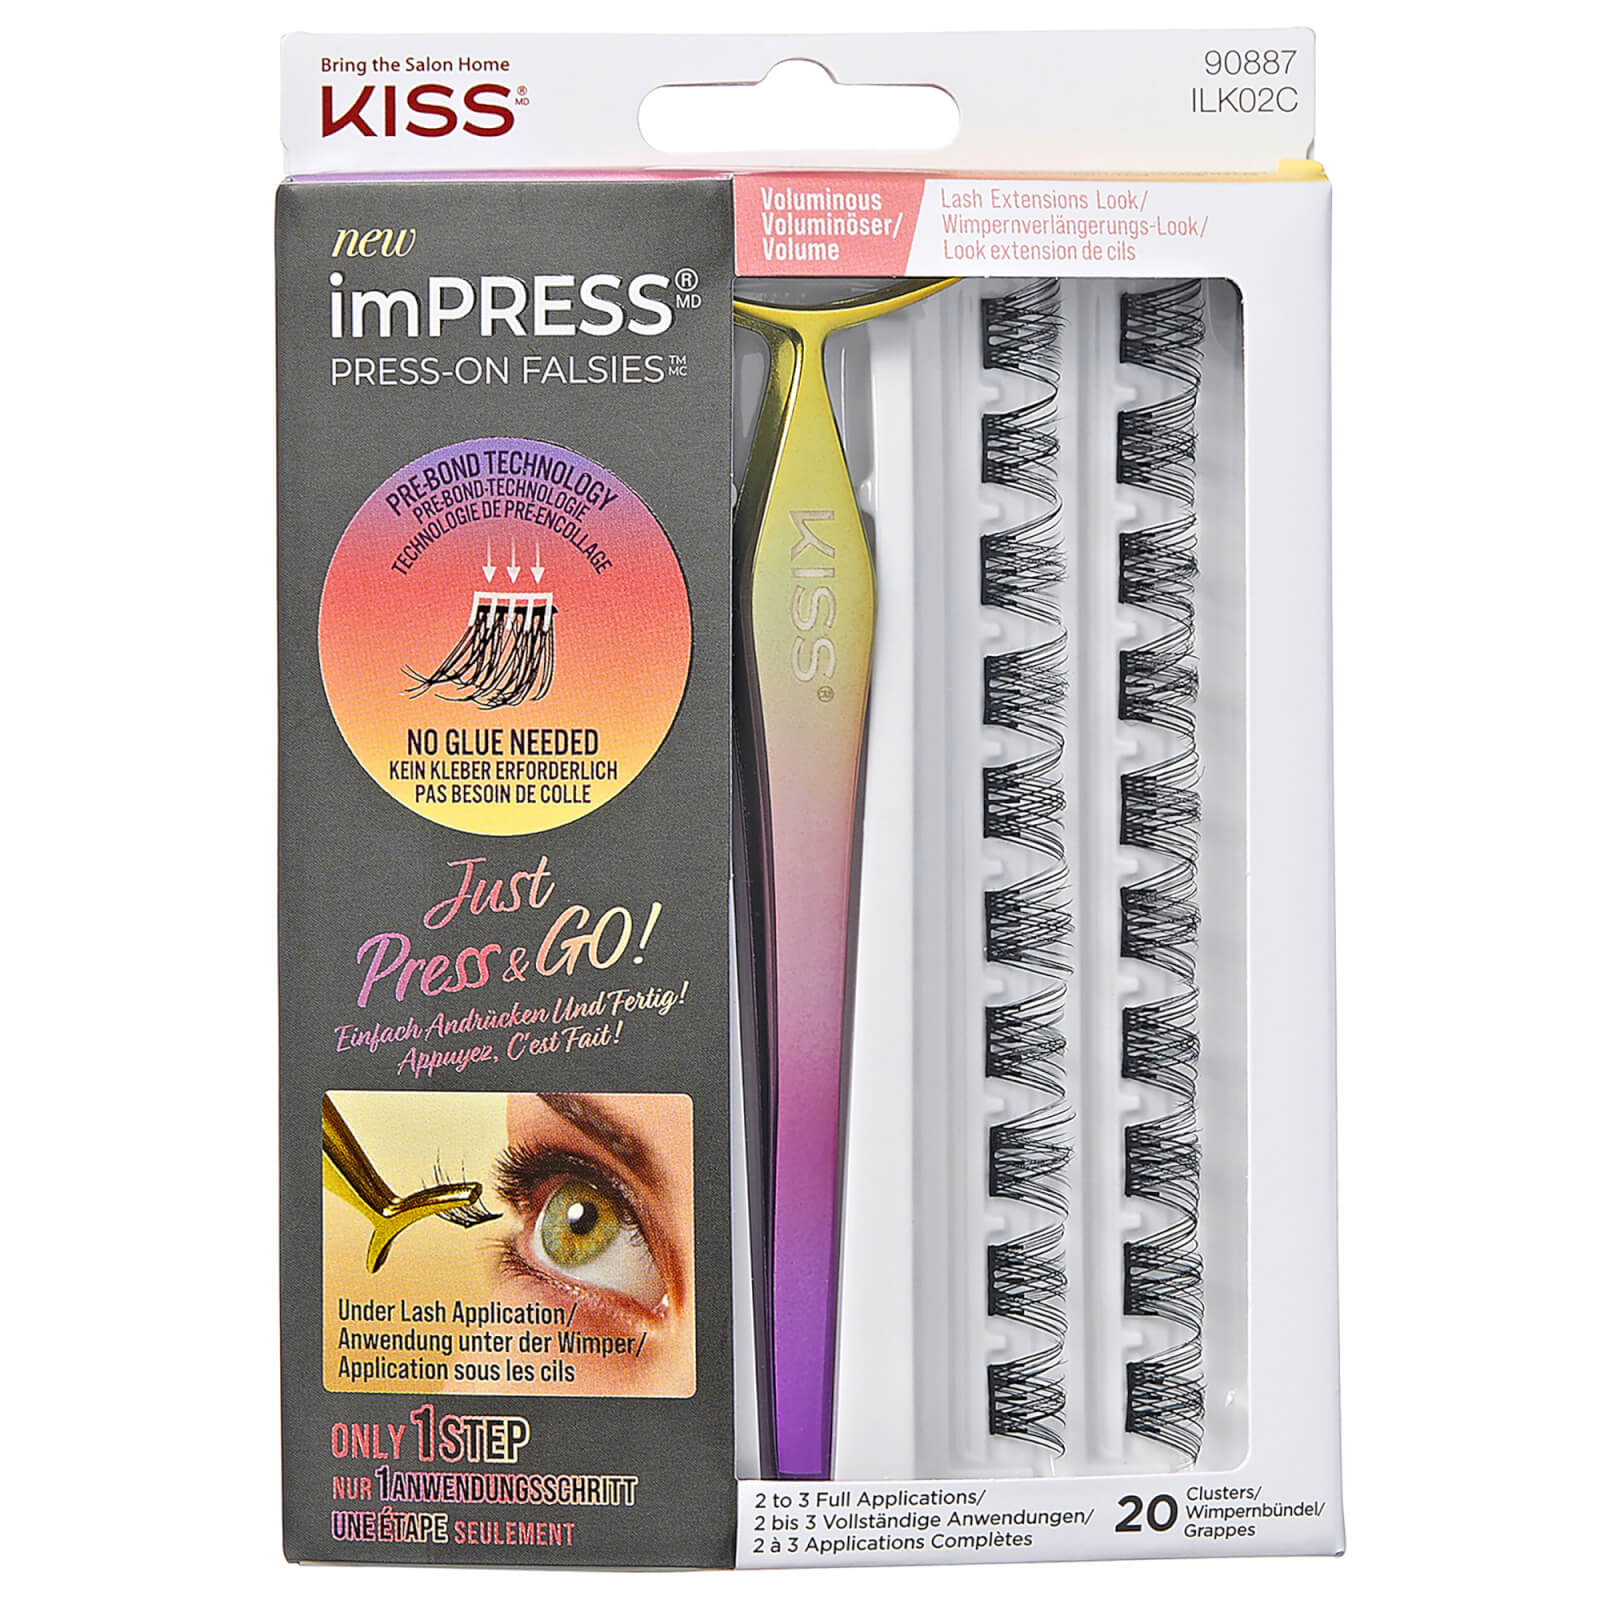 Kiss Impress Falsies Press-on False Lash Kit - Voluminous